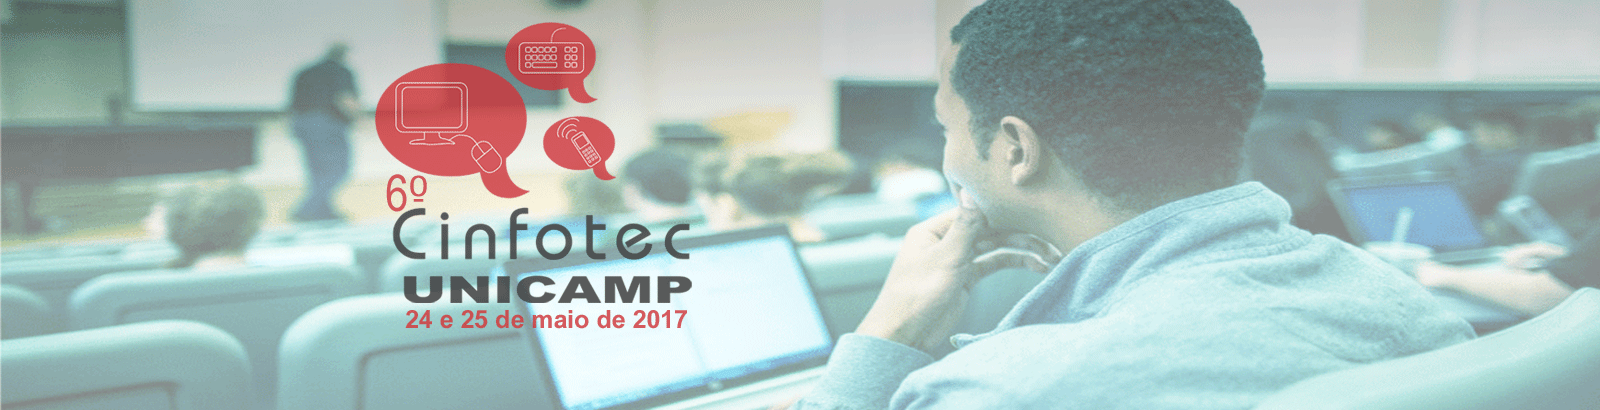 6º Cinfotec Unicamp - Comunicação, Informação e Tecnologia na Unicamp